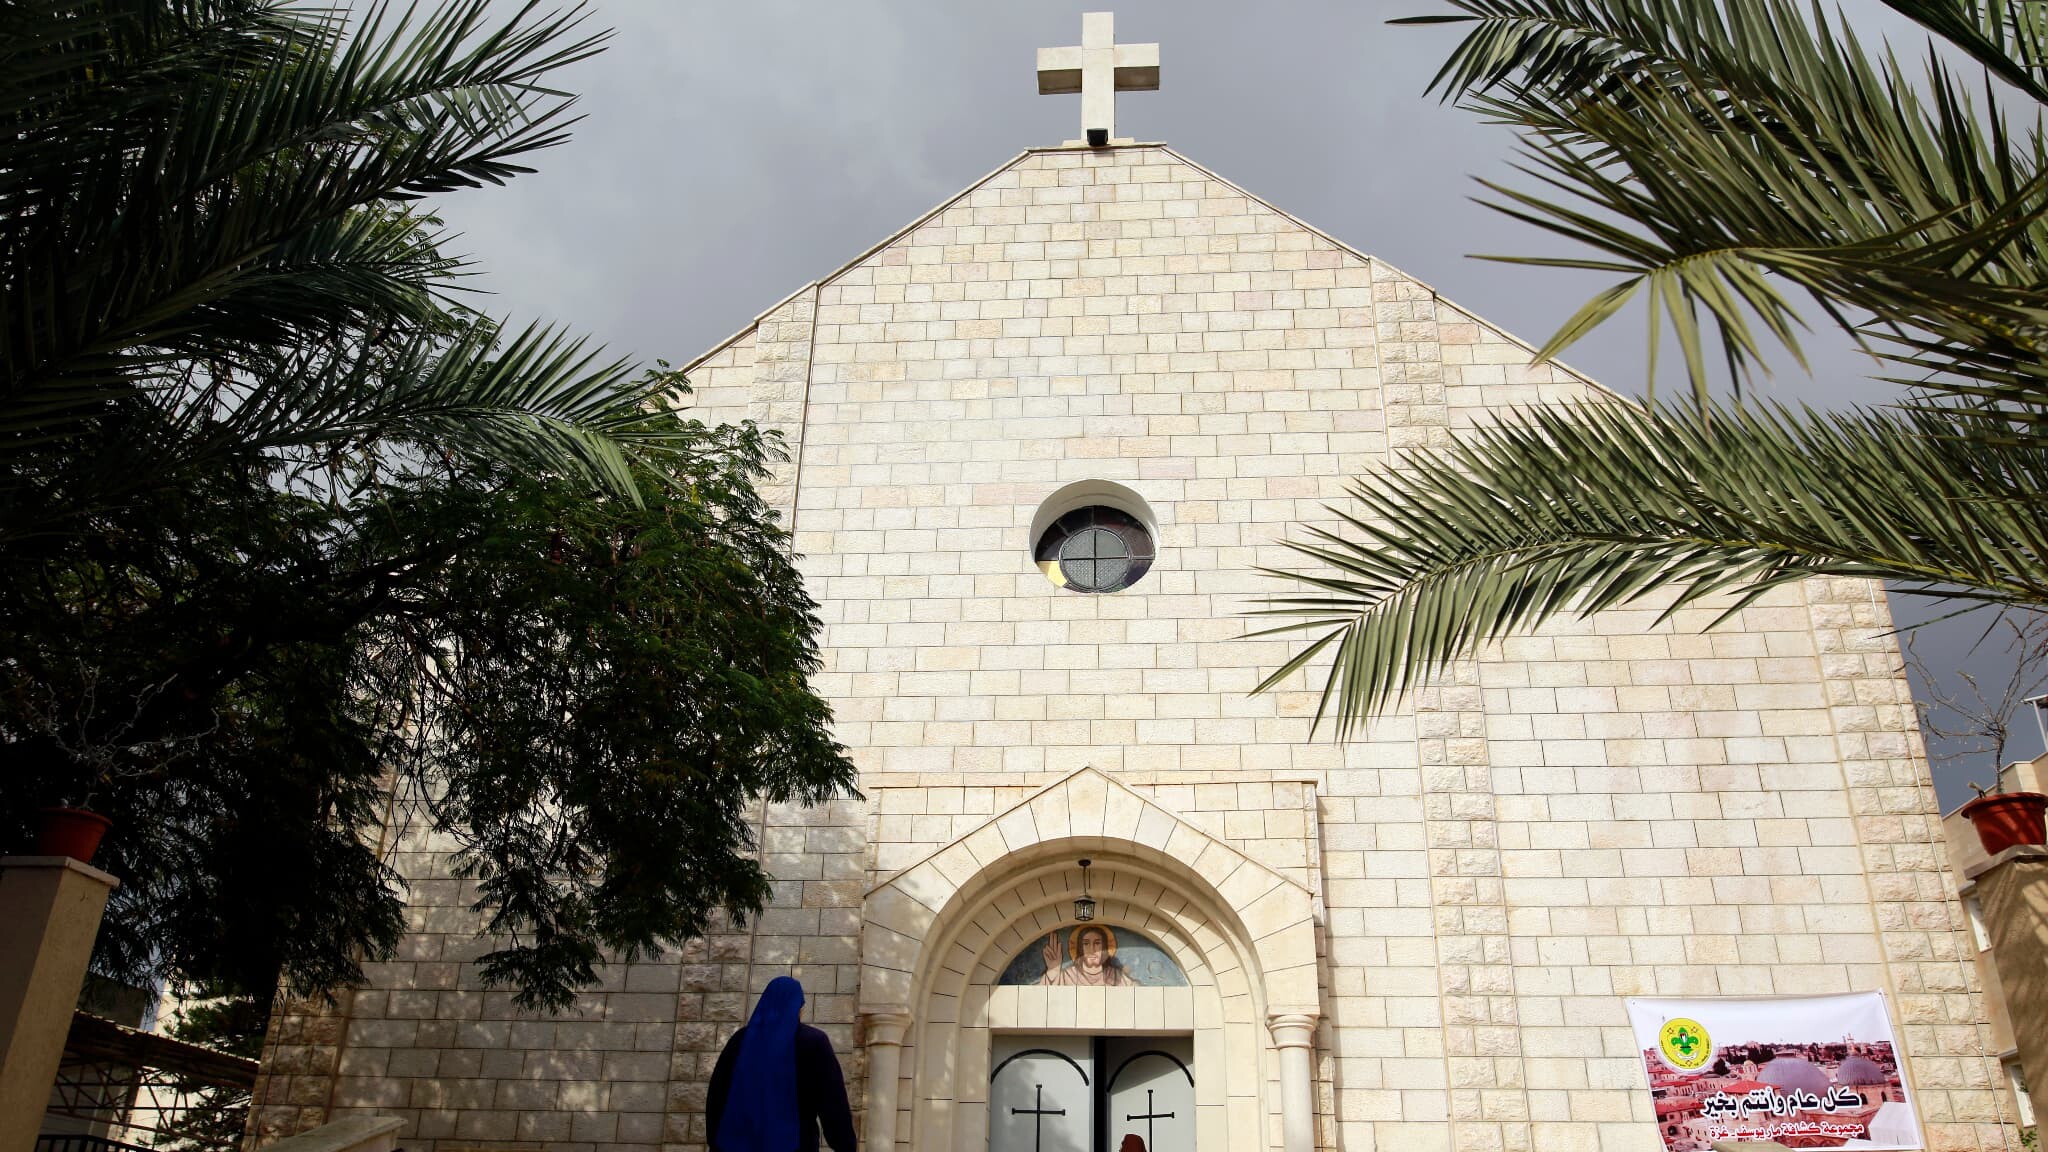 Gaza : Deux femmes assassinées dans la paroisse catholique par un soldat isralien